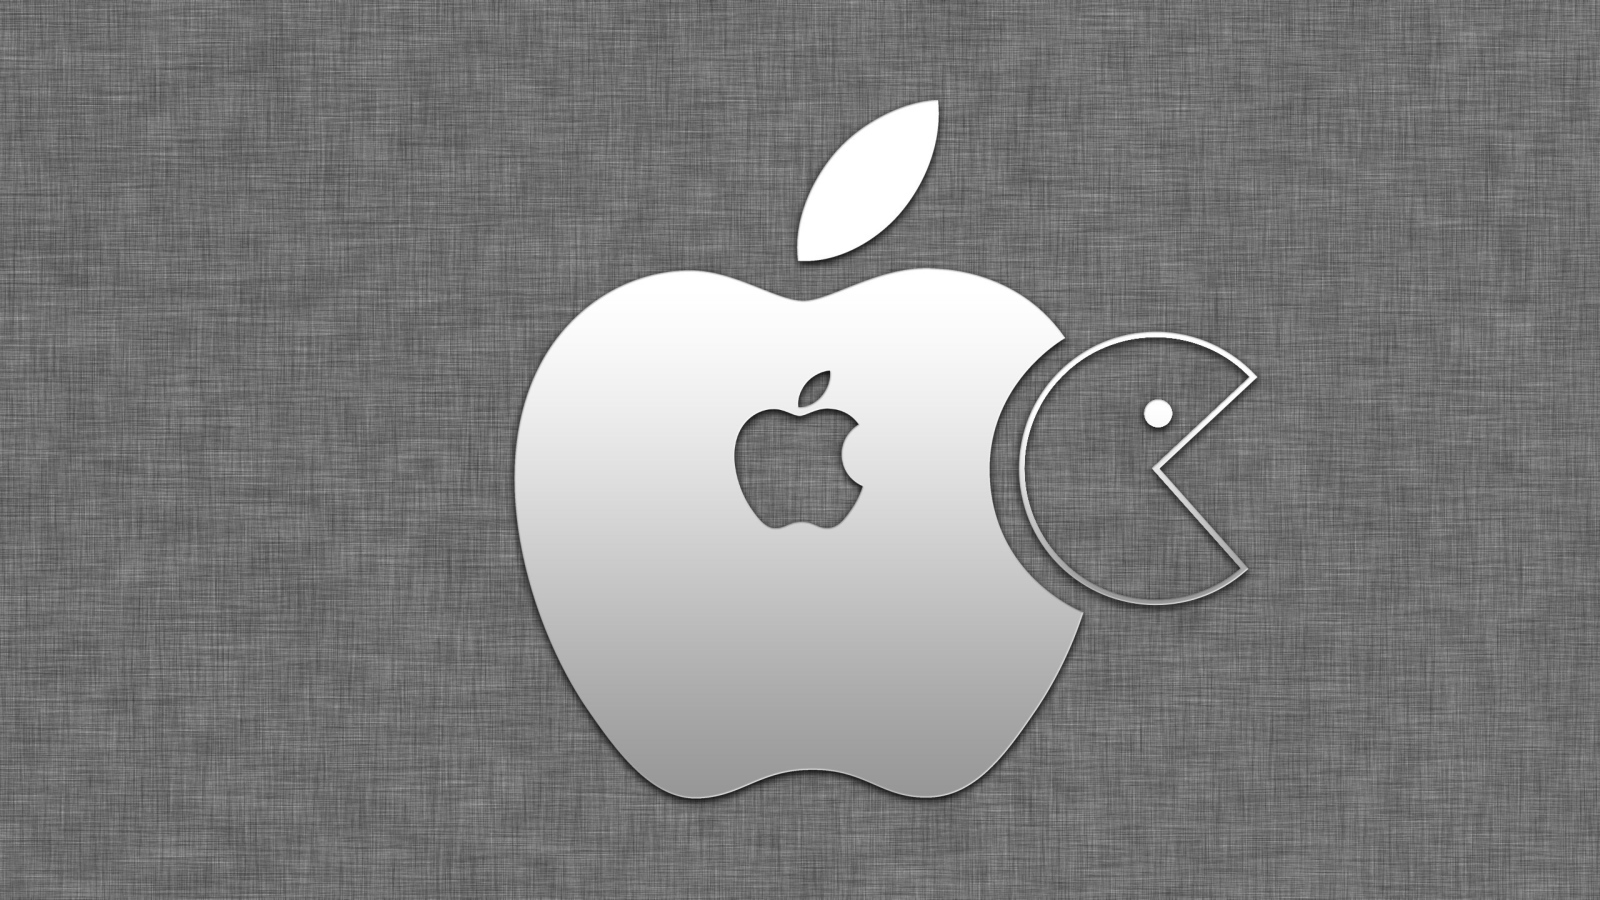 Значок apple и пакмэн на сером фоне